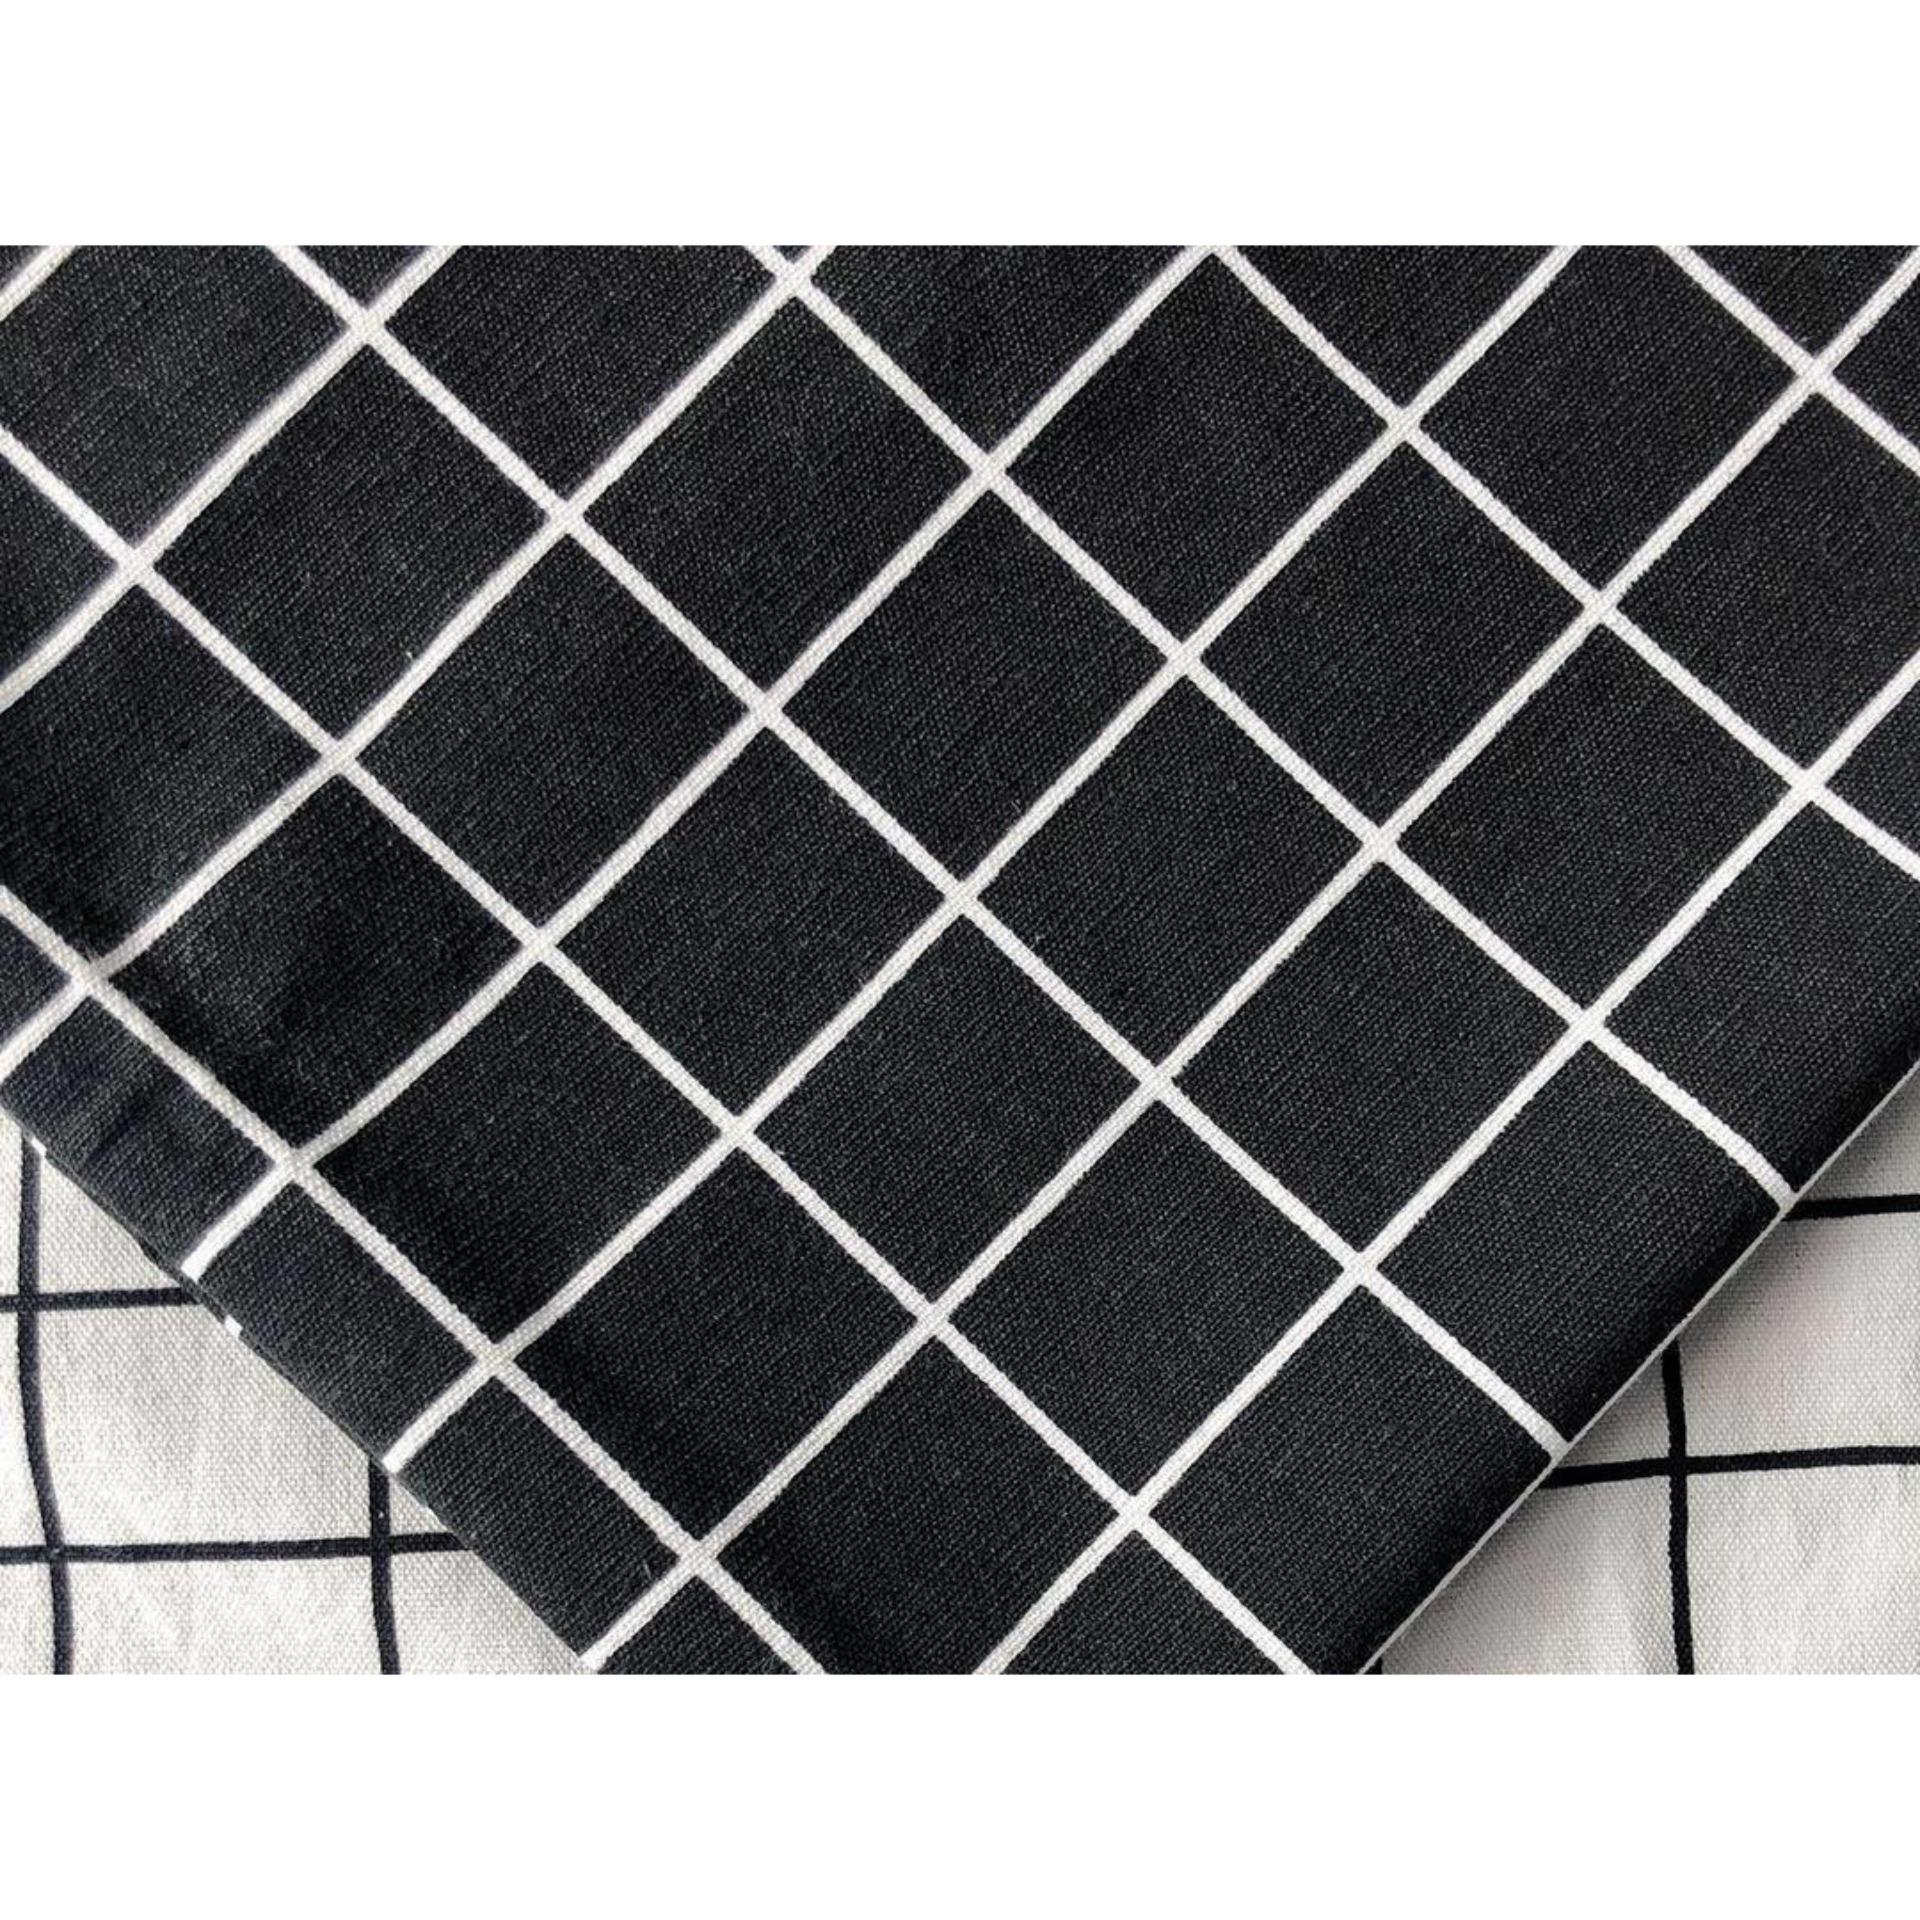 Vải caro đen trắng trang trí mang đến cho không gian của bạn một sự độc đáo và sáng tạo. Với các ô caro đơn giản nhưng đầy ấn tượng, bạn sẽ có thể tạo ra một không gian trang trí độc đáo và thu hút.